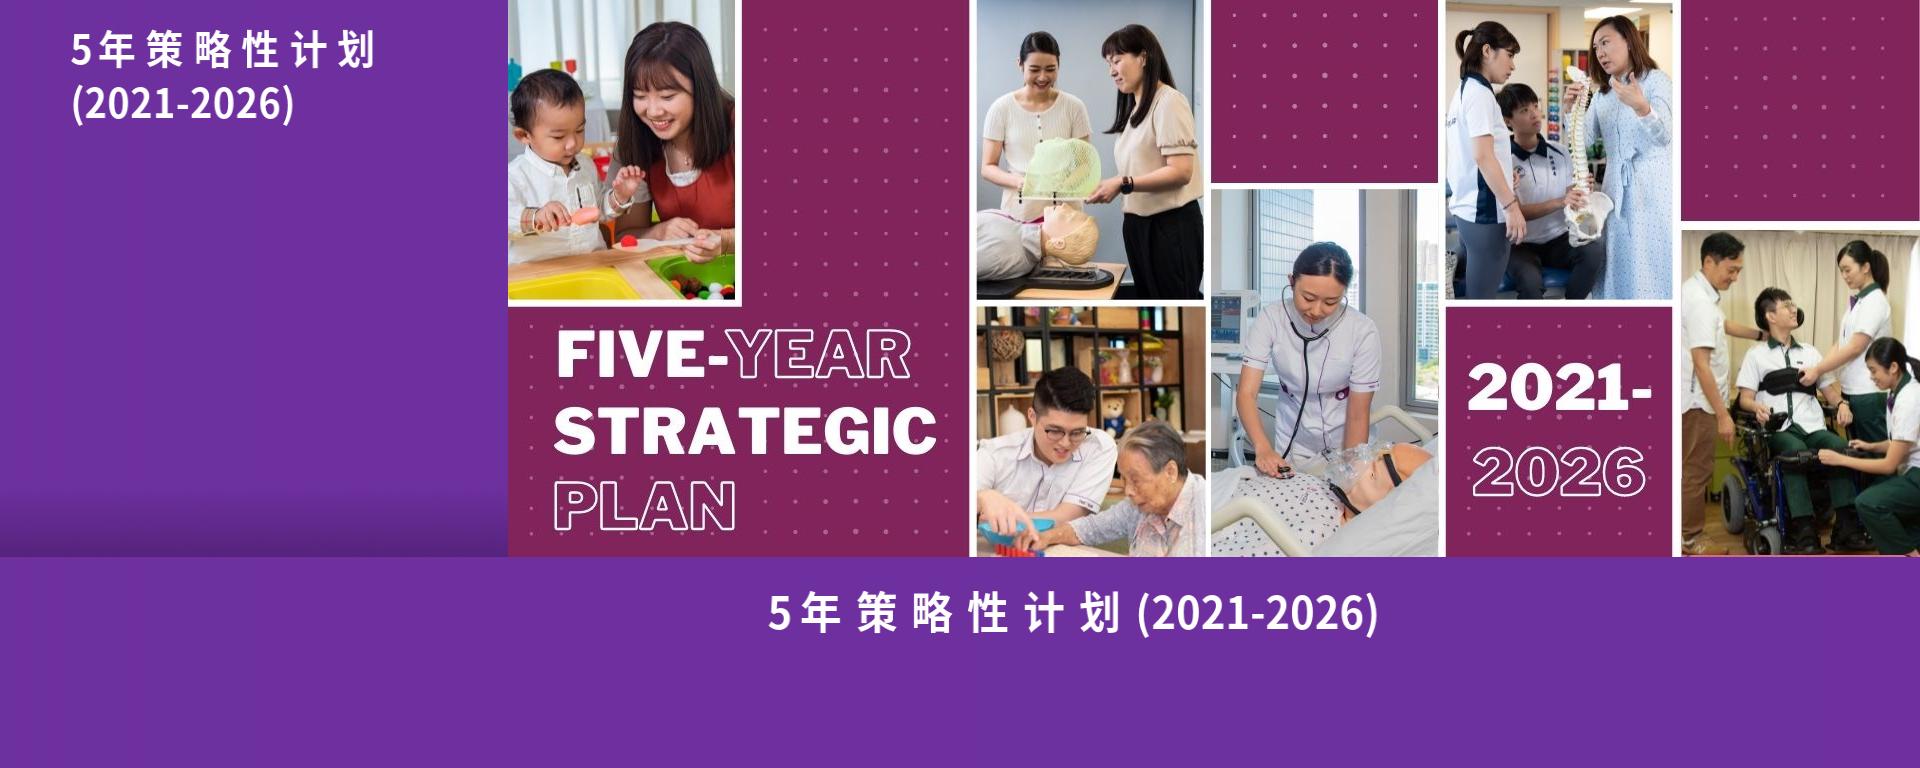 5年策略性计划 (2021-2026)